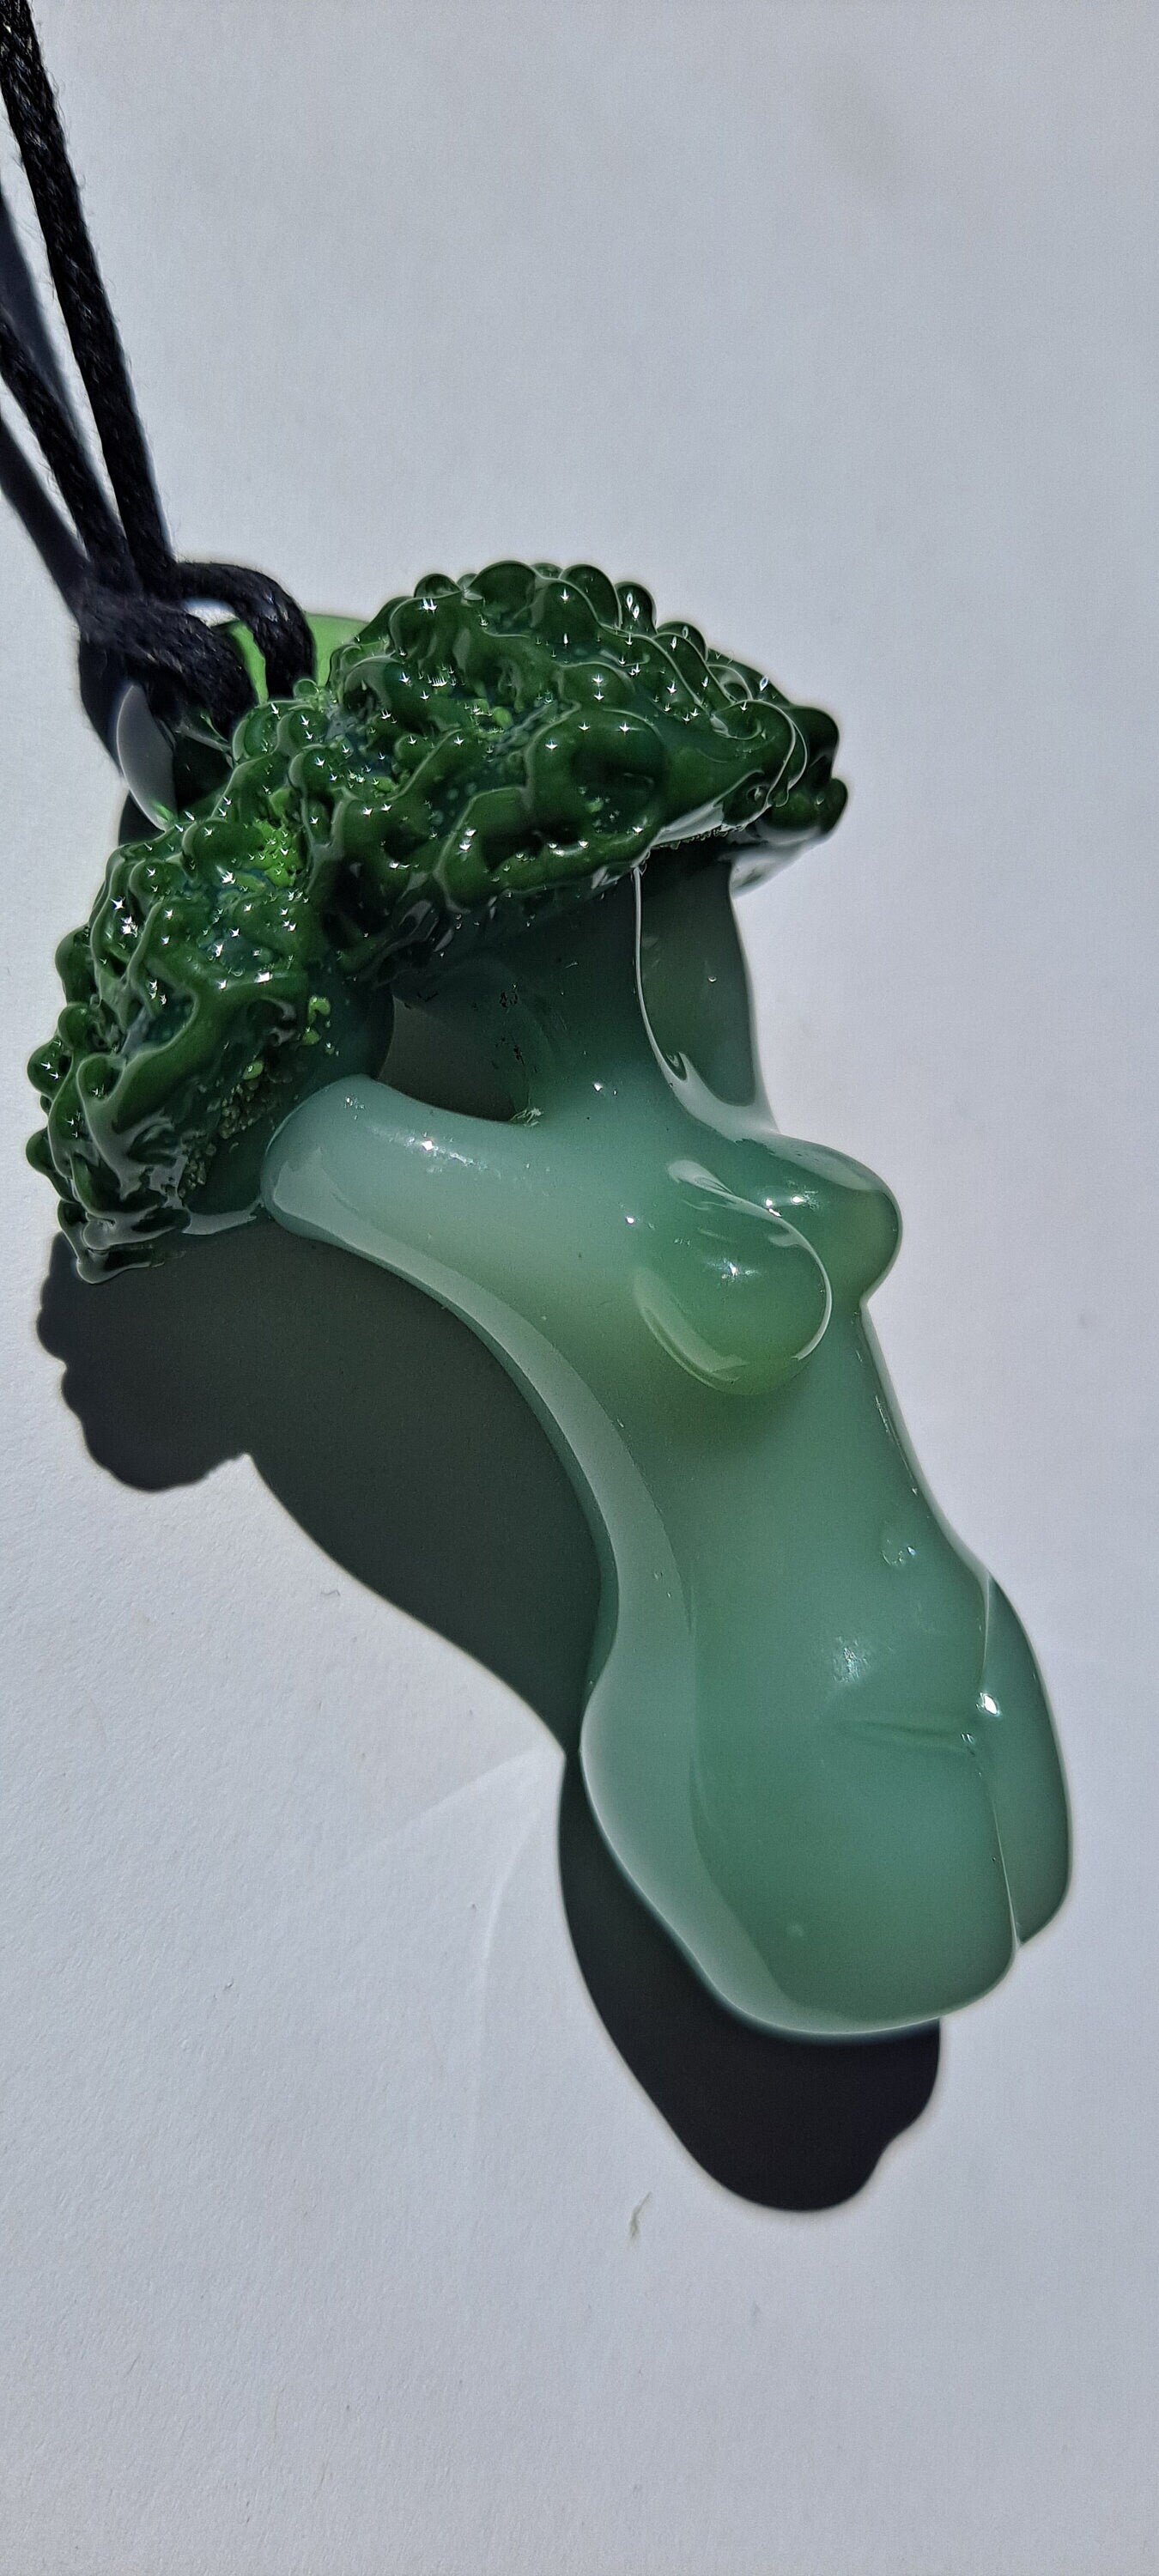 Broccoli Goddess Collection